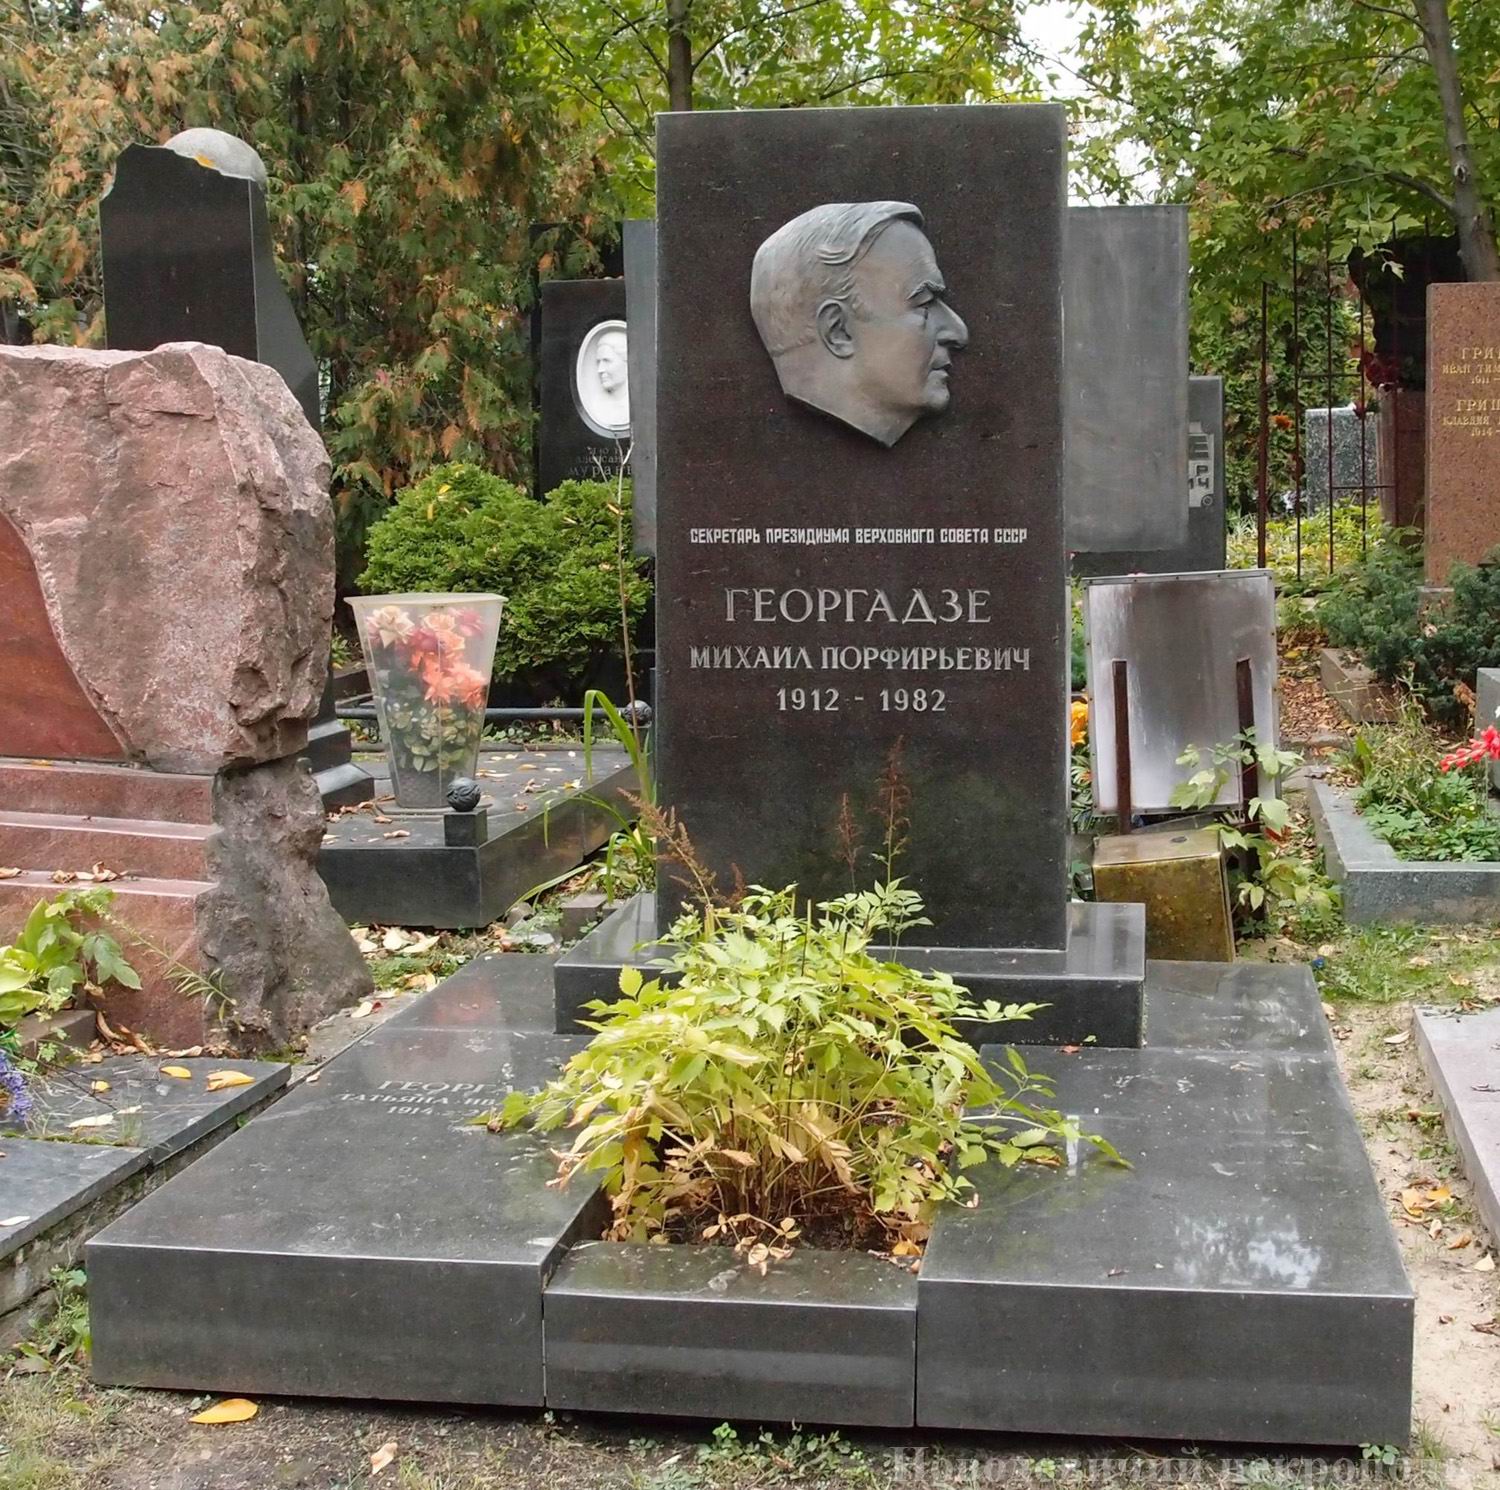 Памятник на могиле Георгадзе М.П. (1912–1982), ск. О.Комов, арх. Ю.Тихонов, на Новодевичьем кладбище (10–1–8).